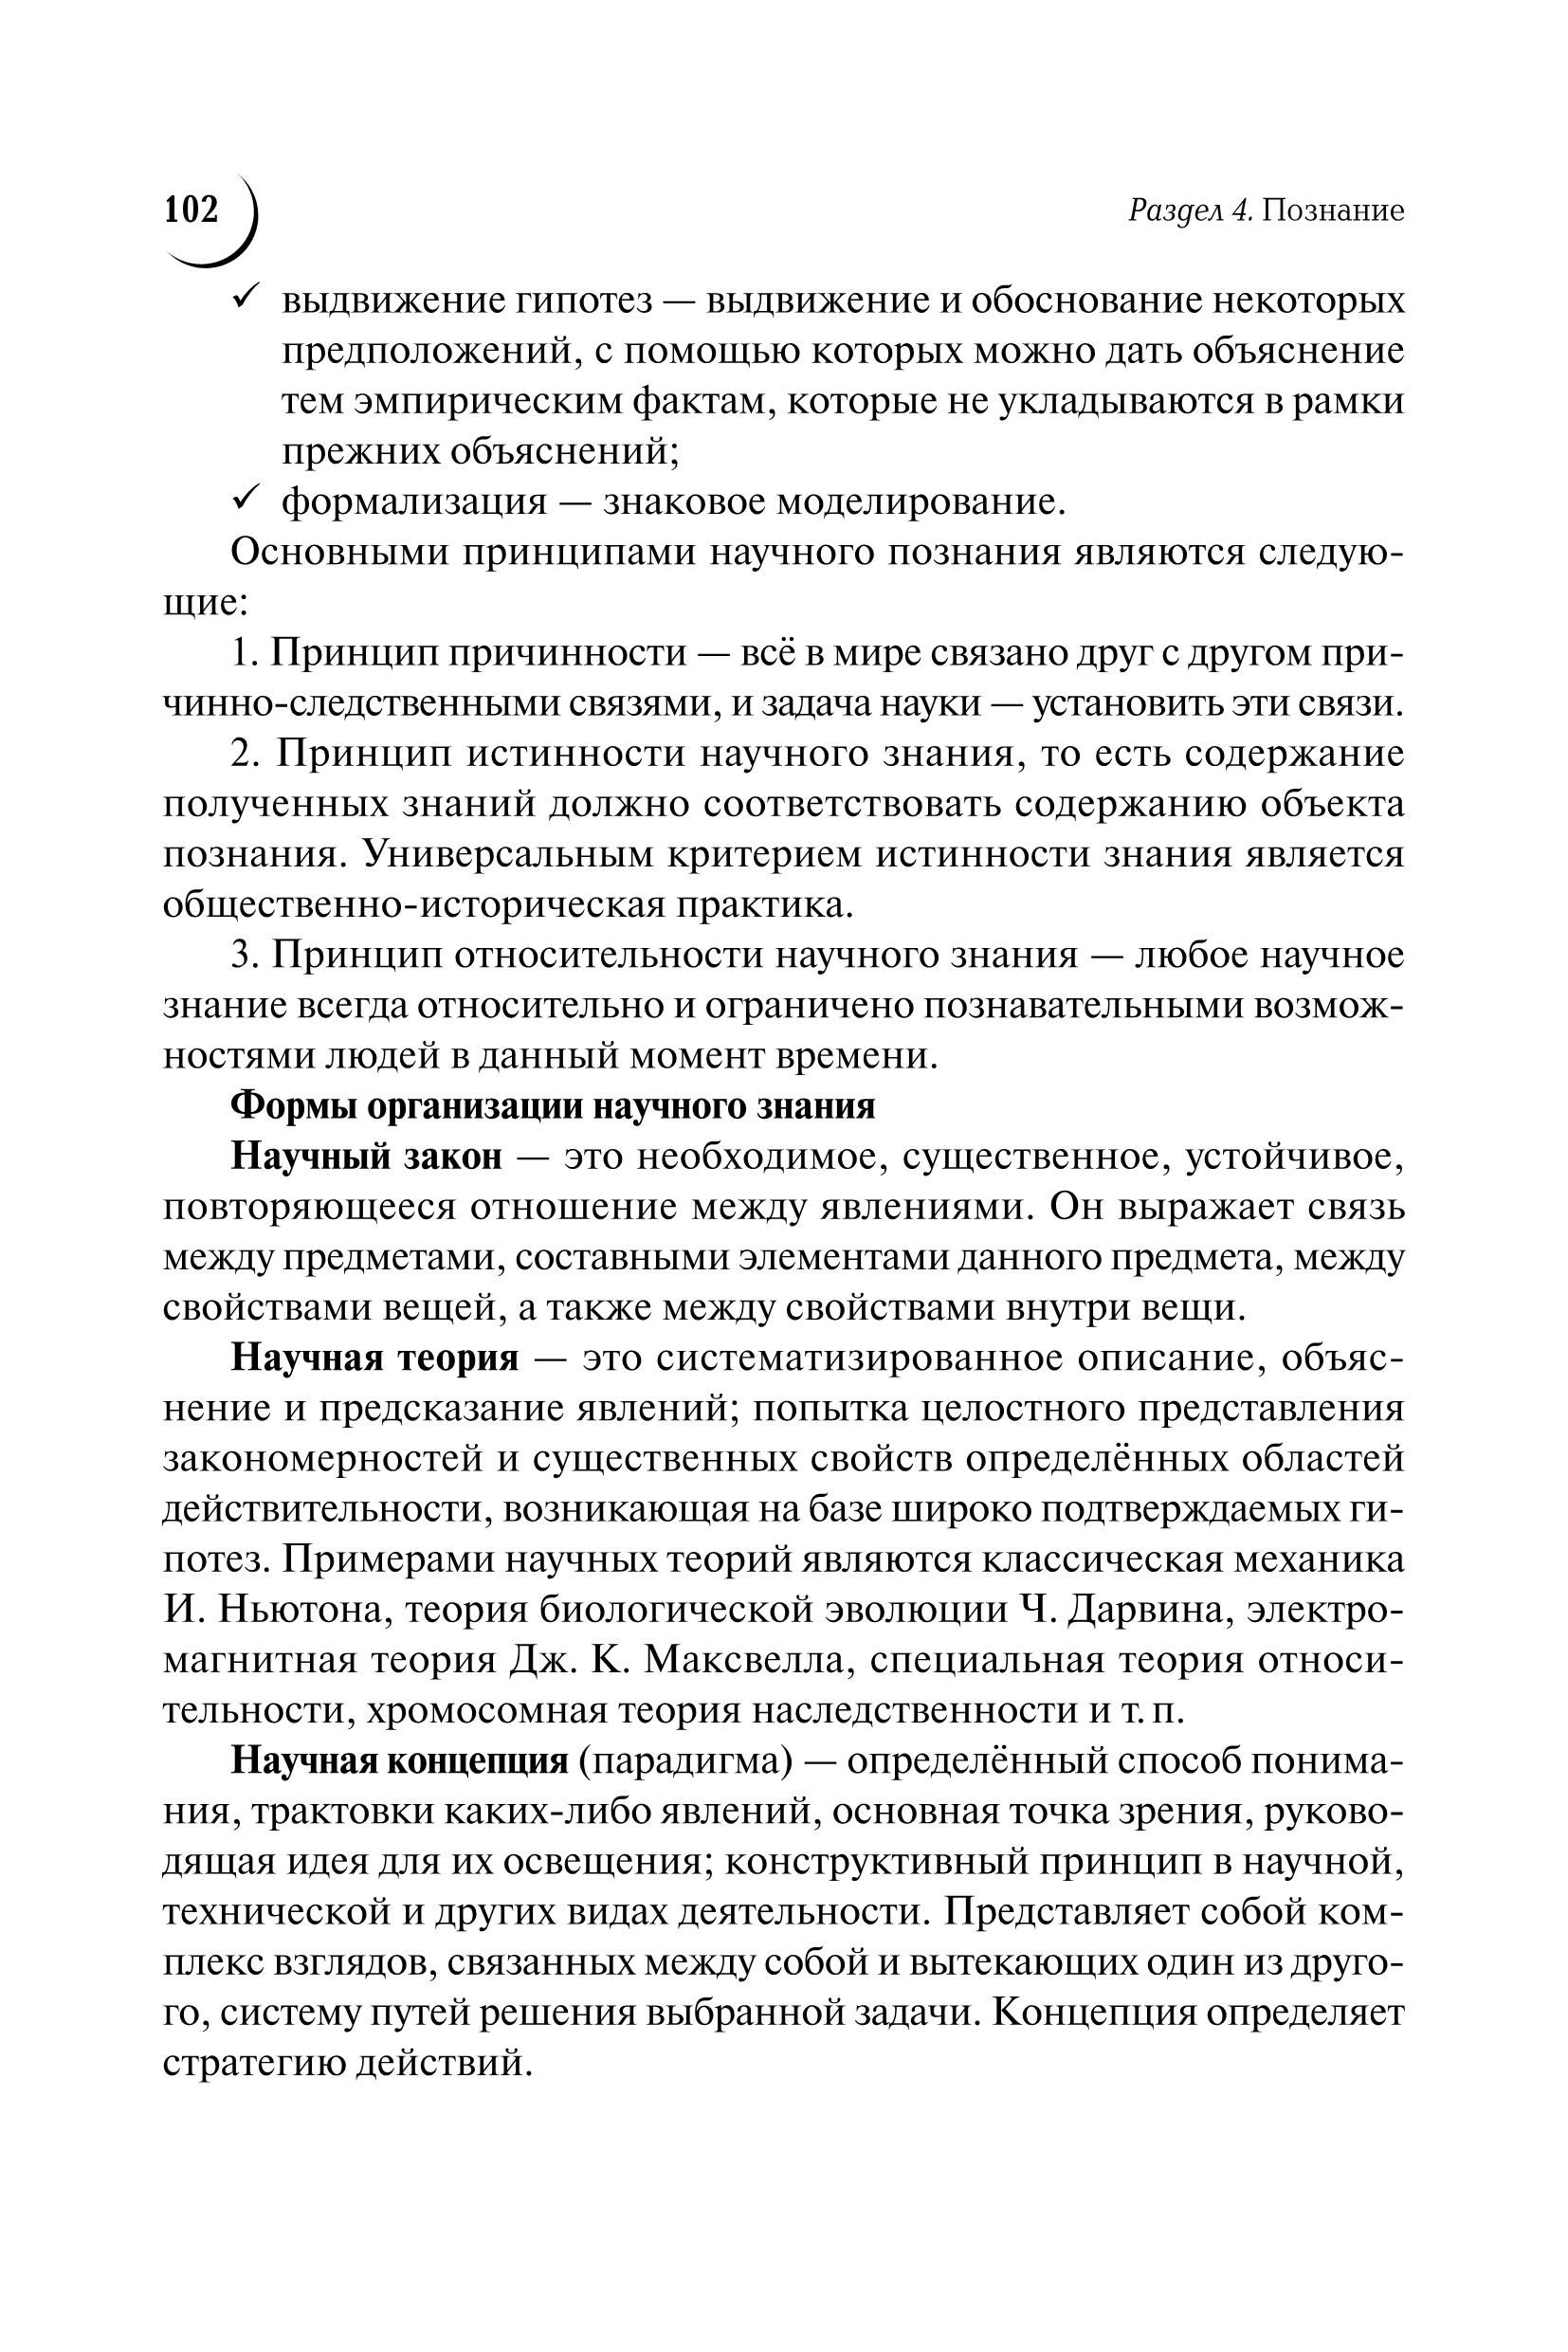 Обществознание. Большой справочник для подготовки к ЕГЭ и ОГЭ. 8-е изд.